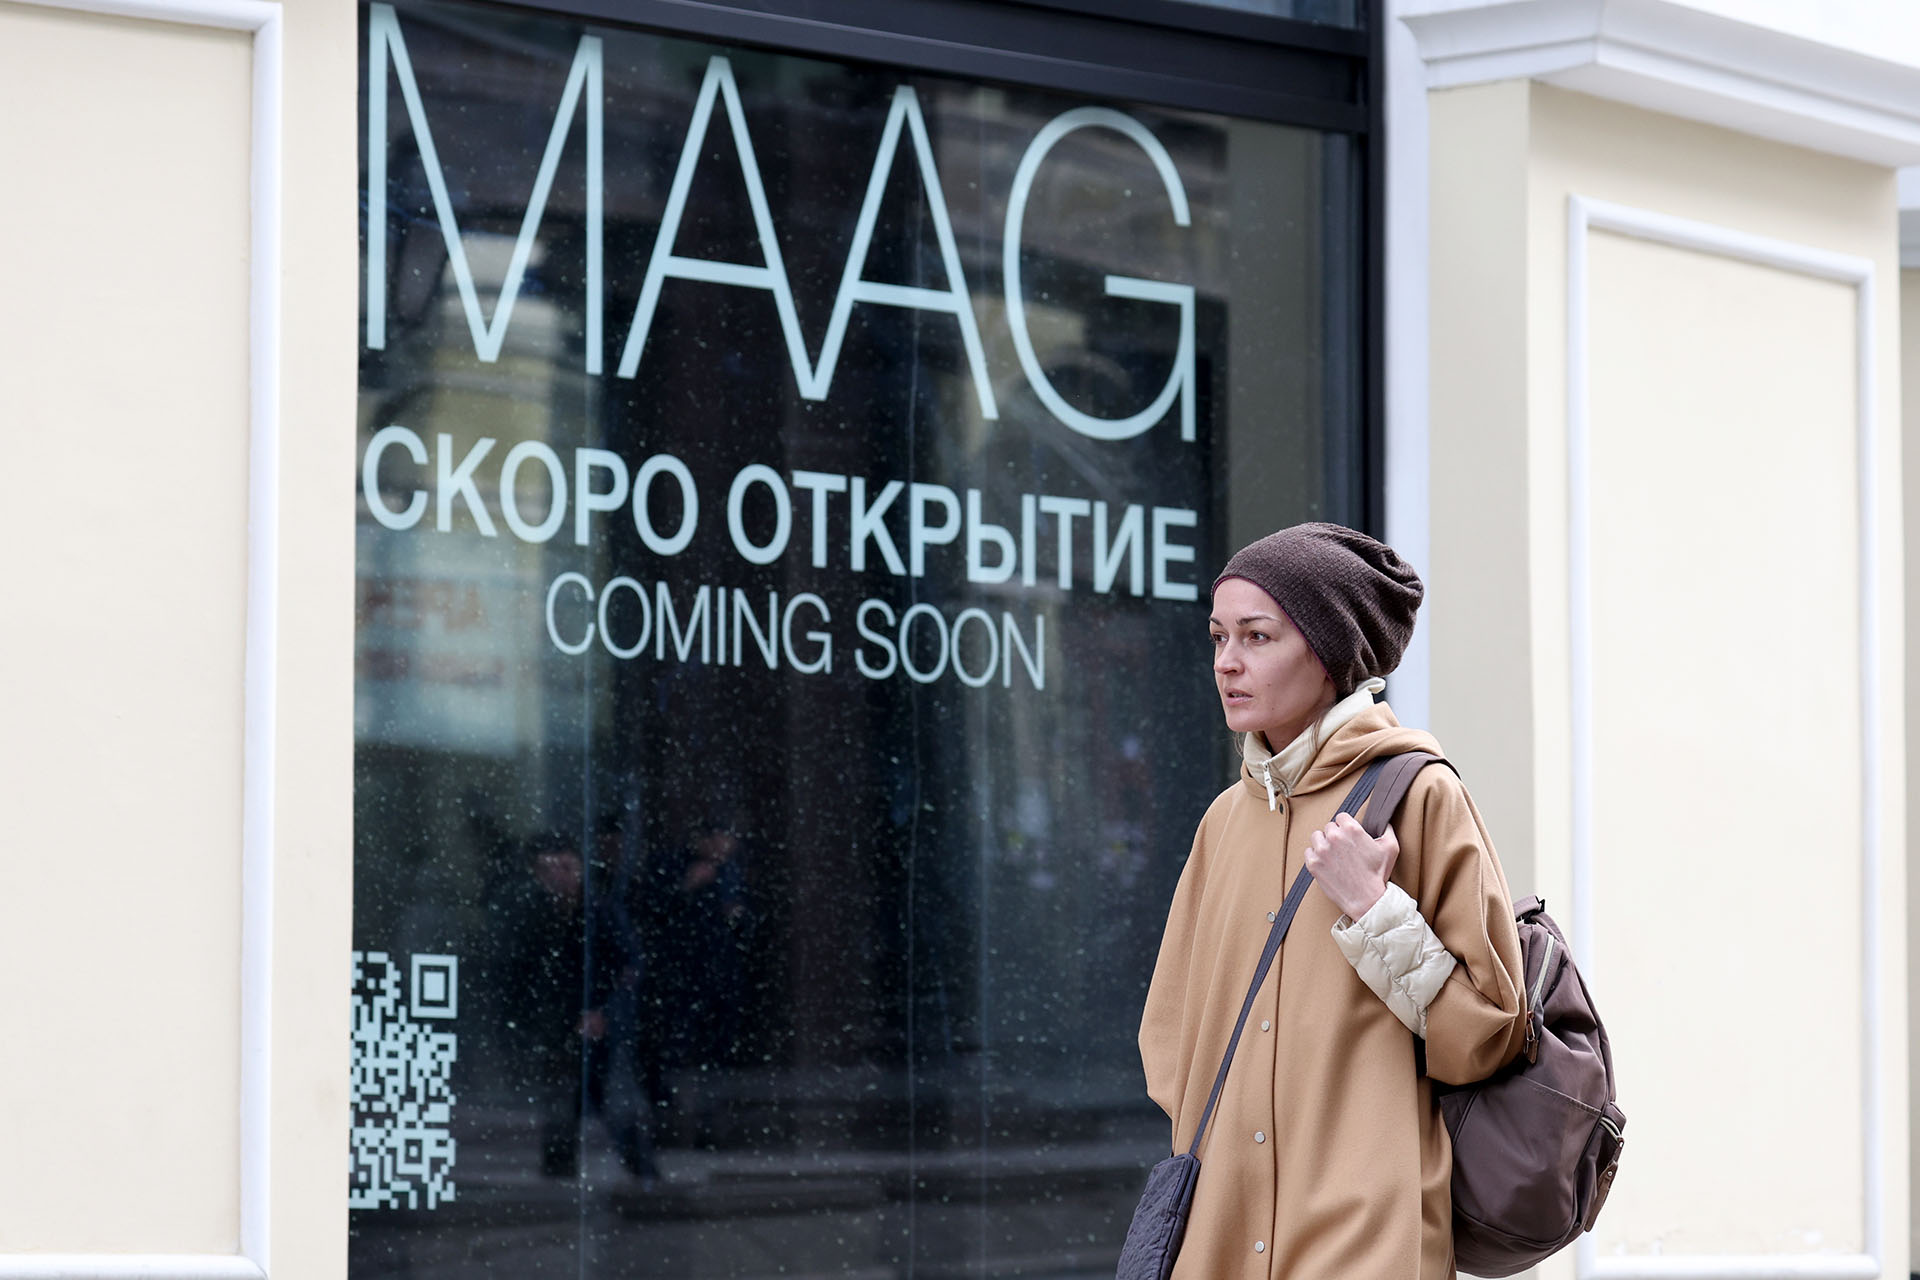 Ожидается открытие новых магазинов Zara под брендом Maag